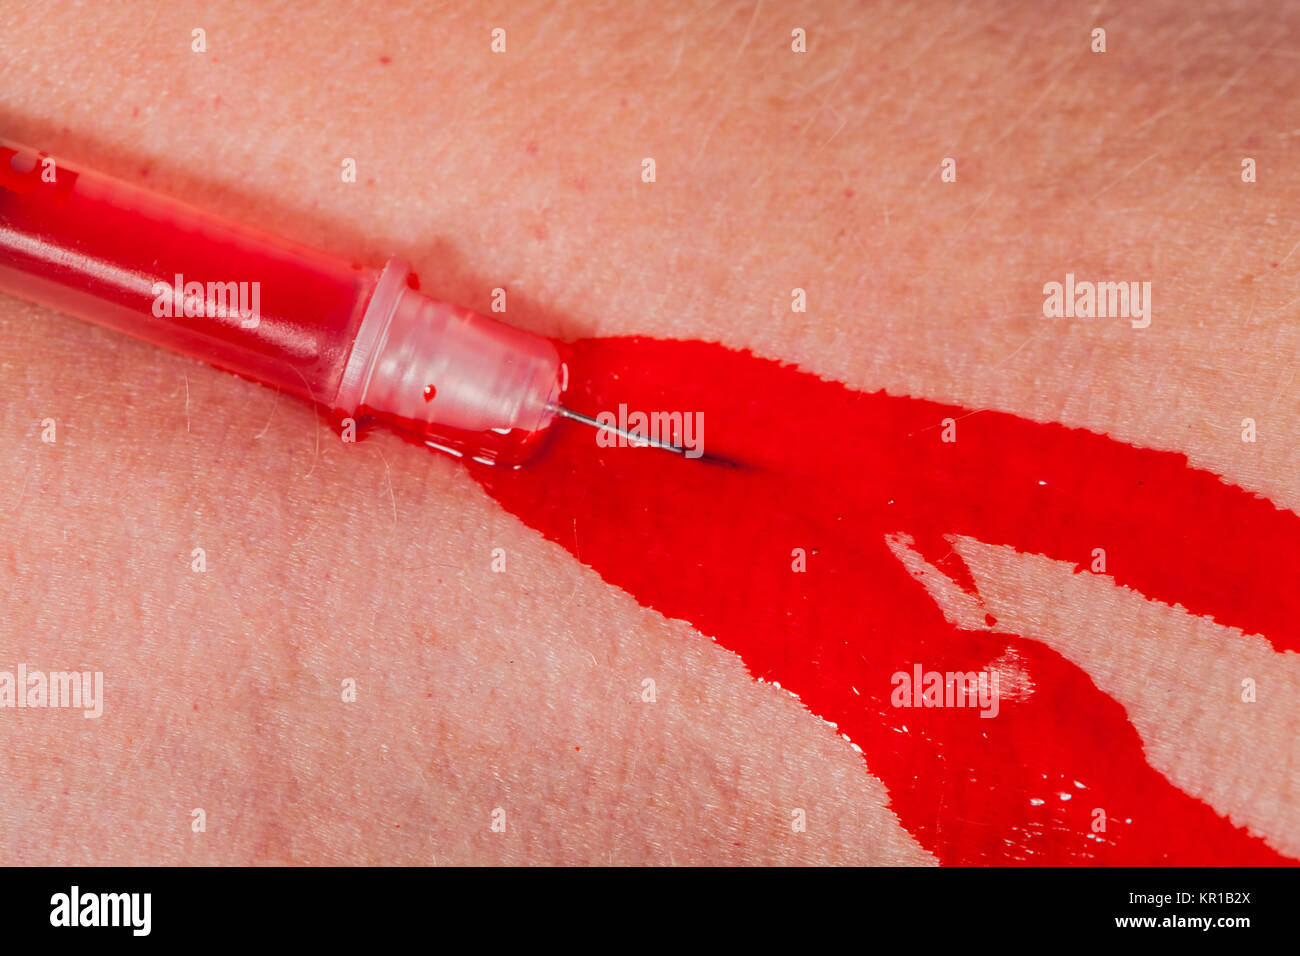 Kleine Spritze mit Nadel in der Haut Ader Vene Blut Drogen Medizin als Macro Nahaufnahme Stock Photo